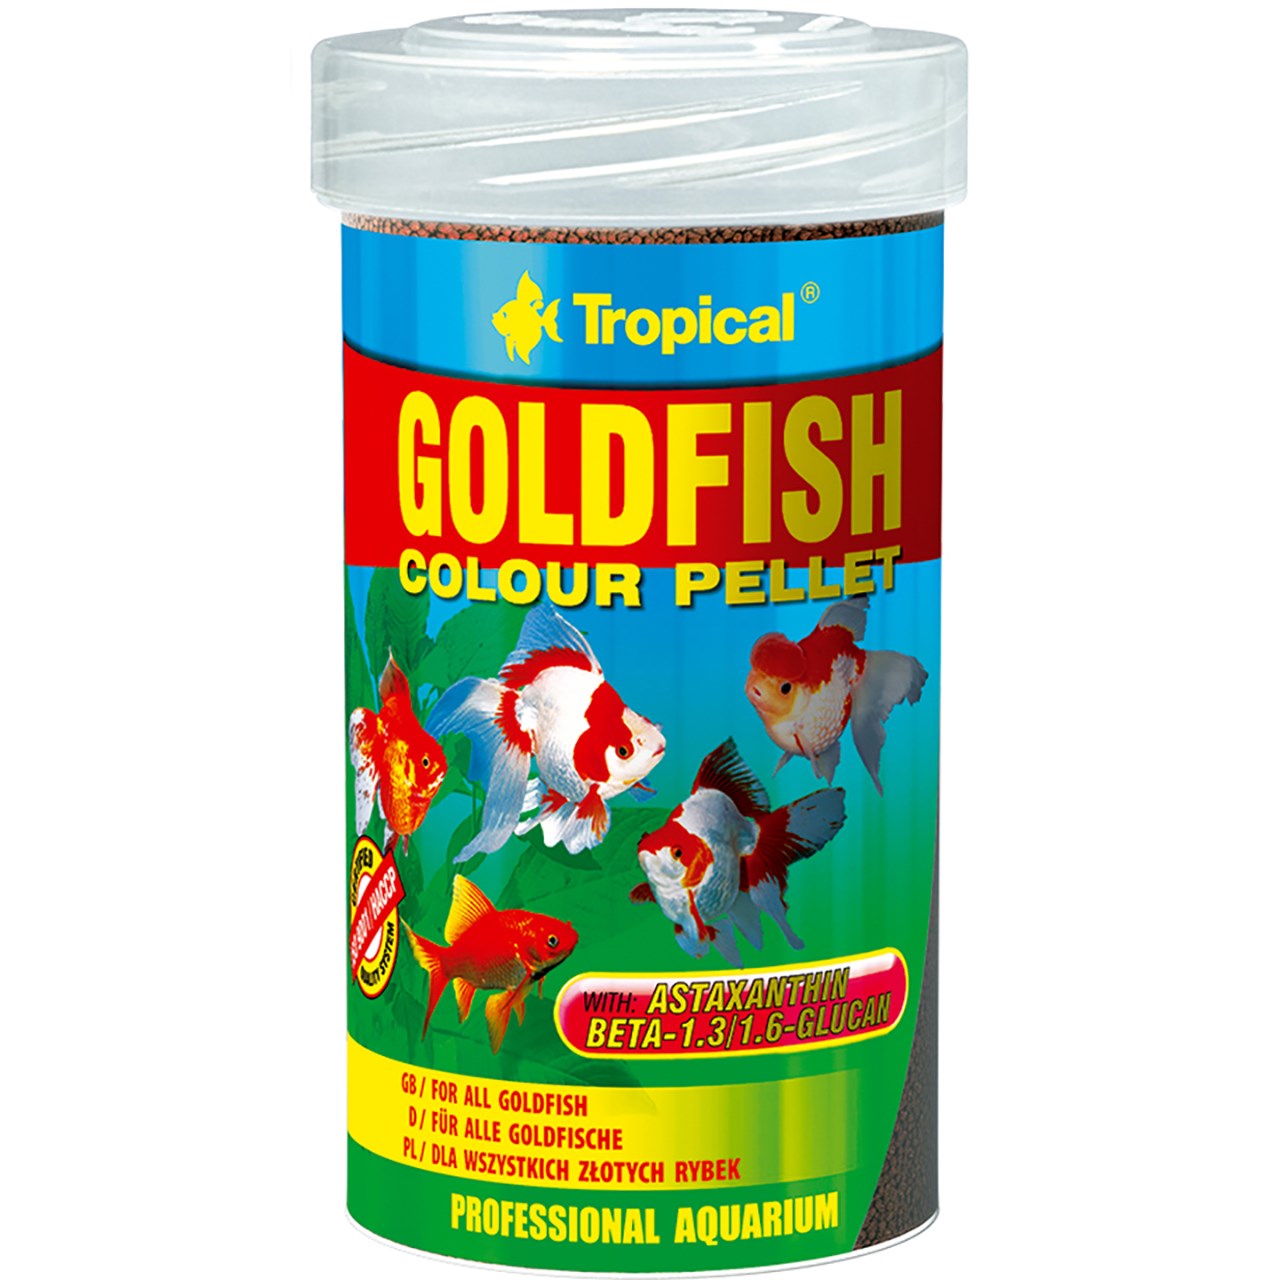 غذای ماهی تروپیکال مدل Goldfish Colour Pelet وزن 36 گرم